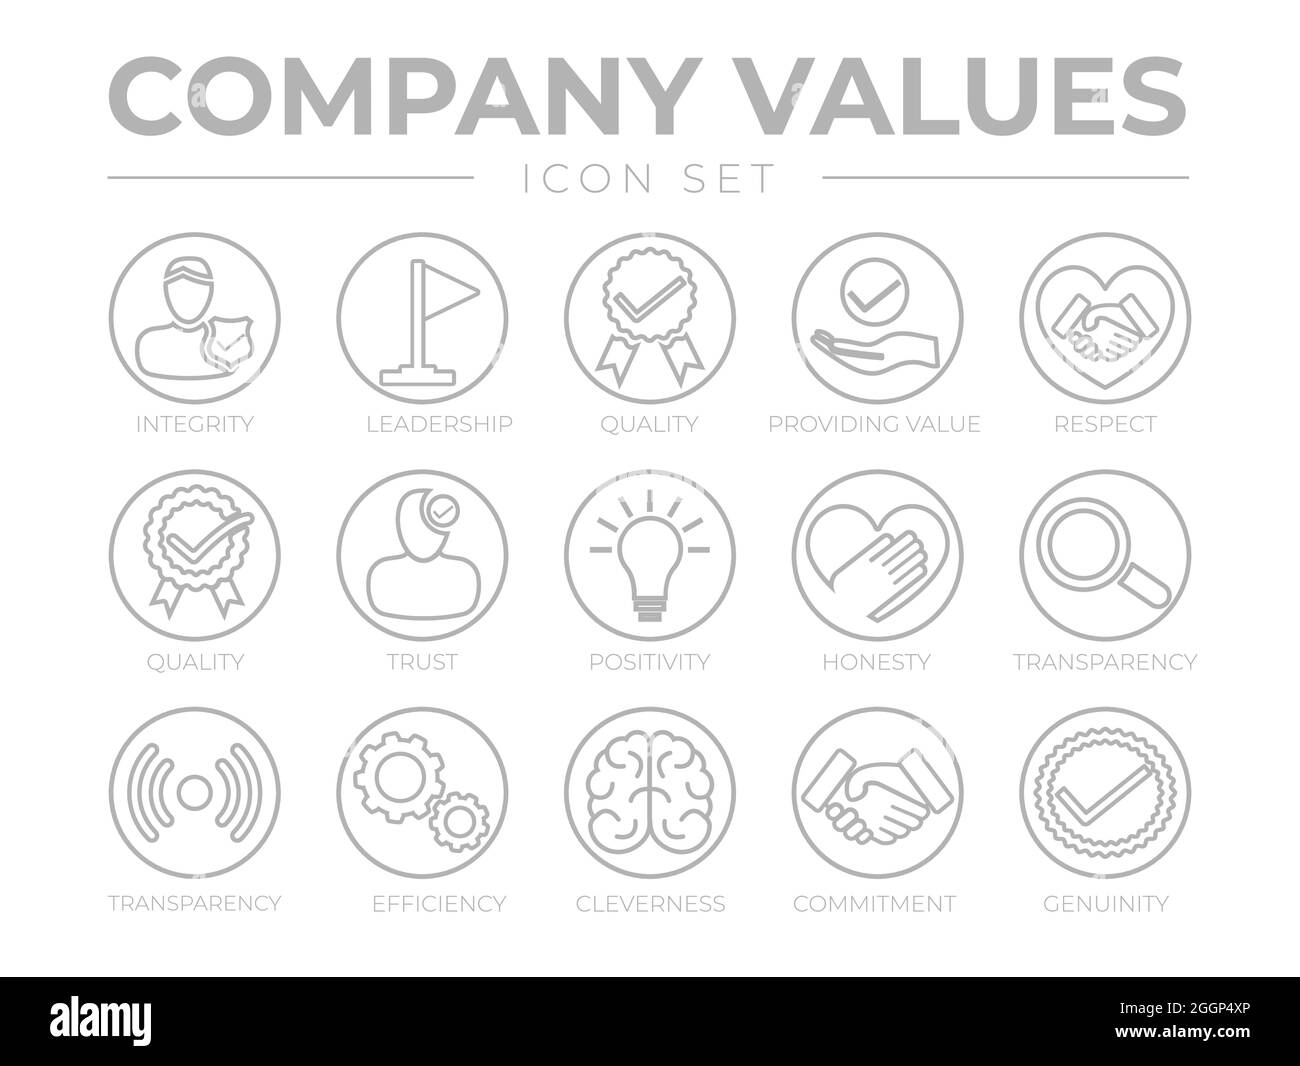 Dünne Umrisse Unternehmenswerte Runde Graue Symbolgruppe. Integrität, Führung, Qualität, Wert, Respekt, Vertrauen, Positive Einstellung, Ehrlichkeit, Transparenz, Effizienz, Stock Vektor